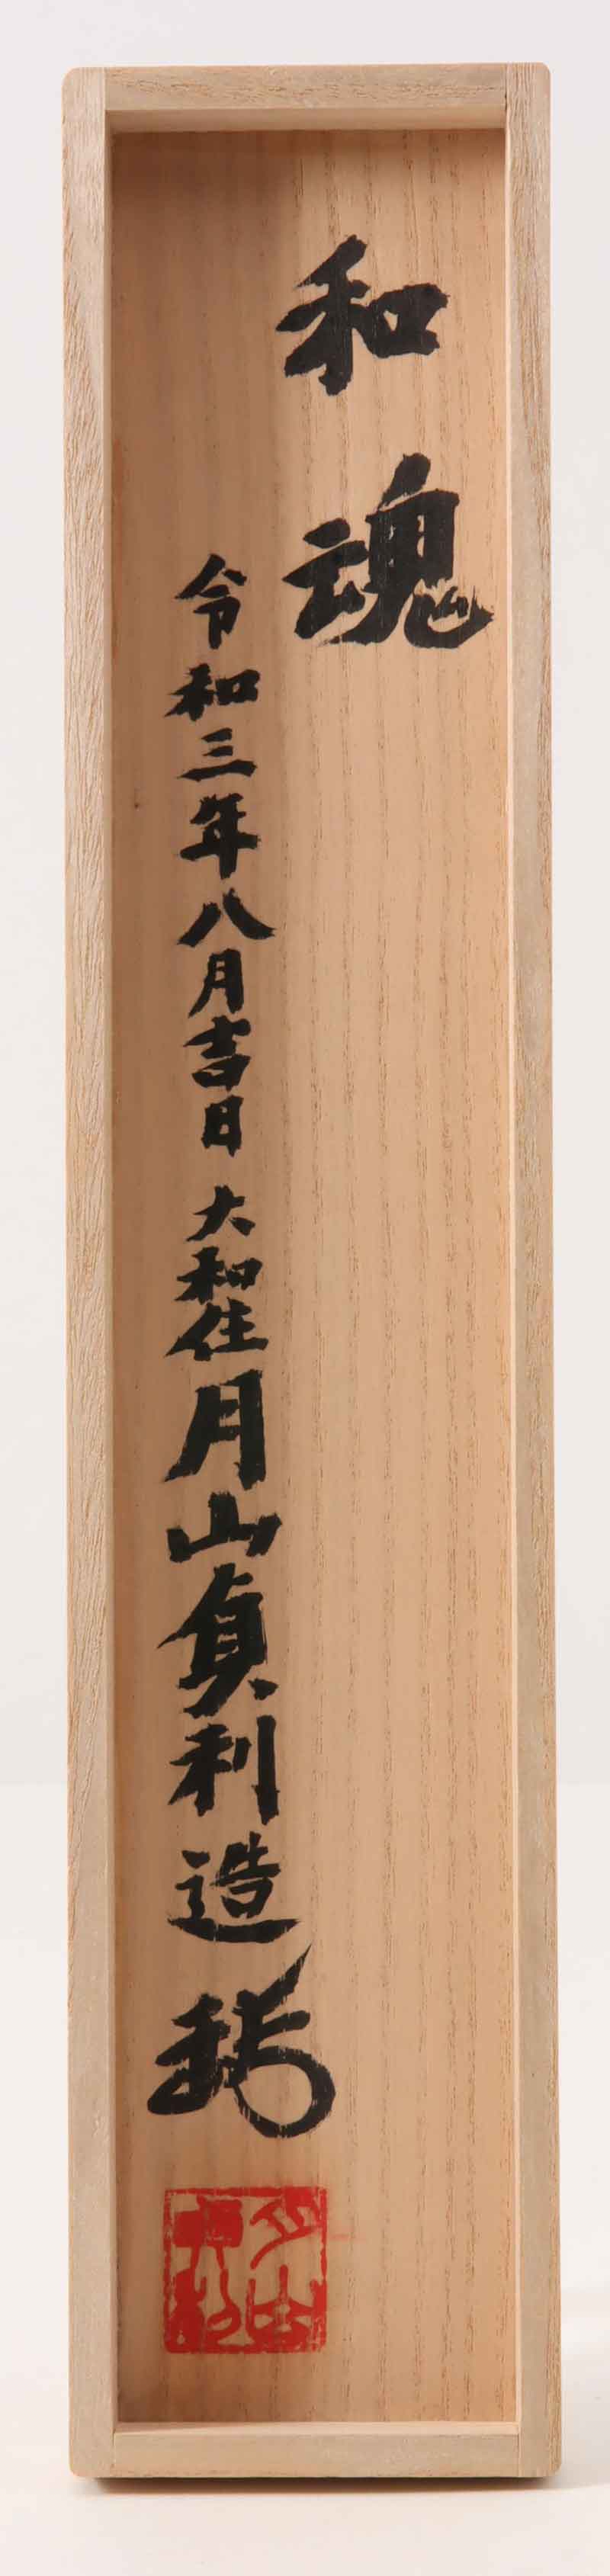 鉄扇 月山貞利 和魂[E00011]｜刀剣や刀の販売なら日本刀販売専門店 